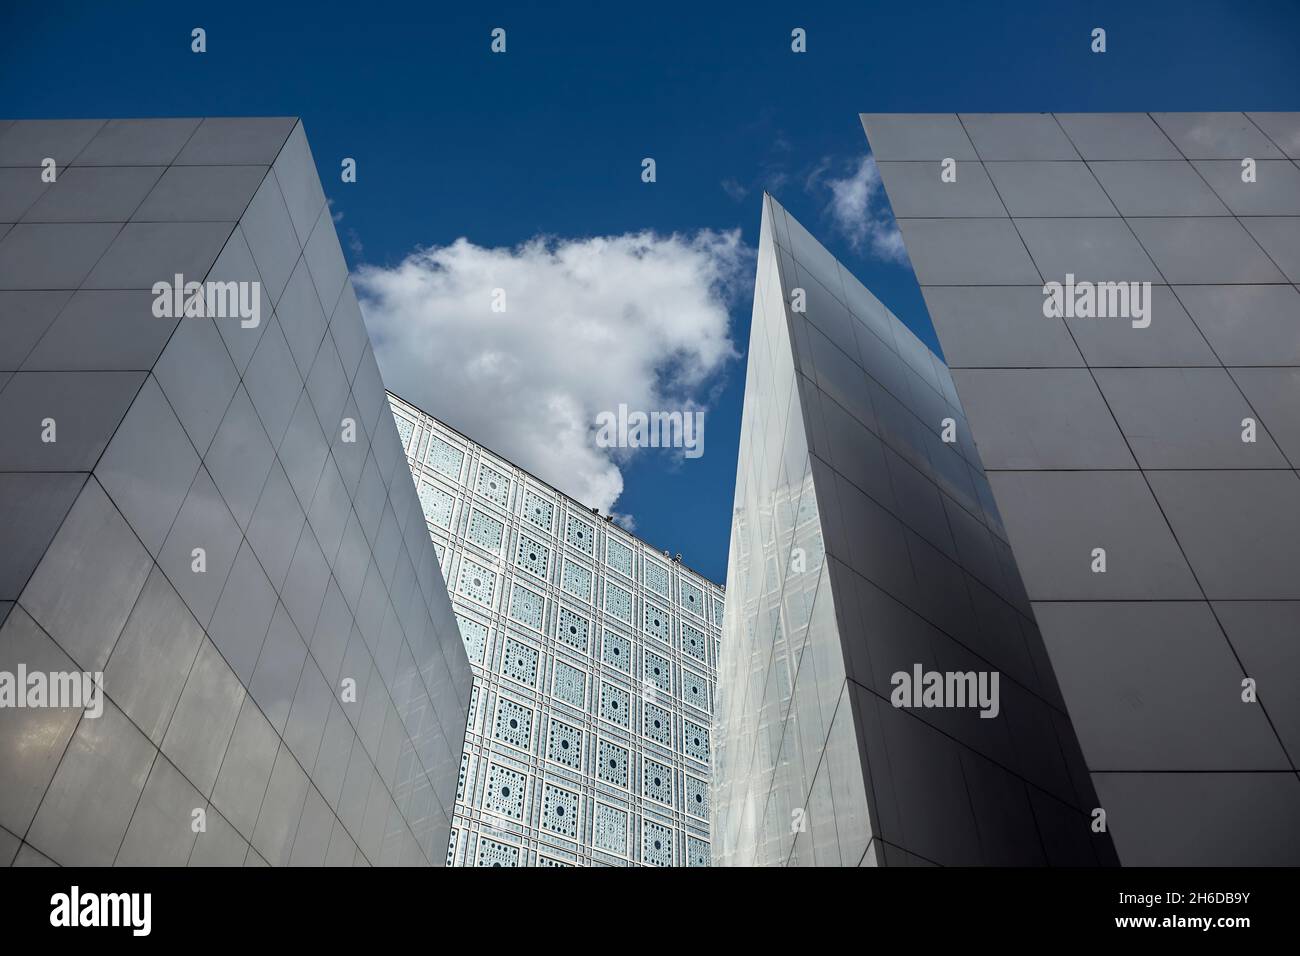 Institut du monde arabe, Institut du monde arabe conçu par l'architecte Jean nouvel, Paris, France. Banque D'Images